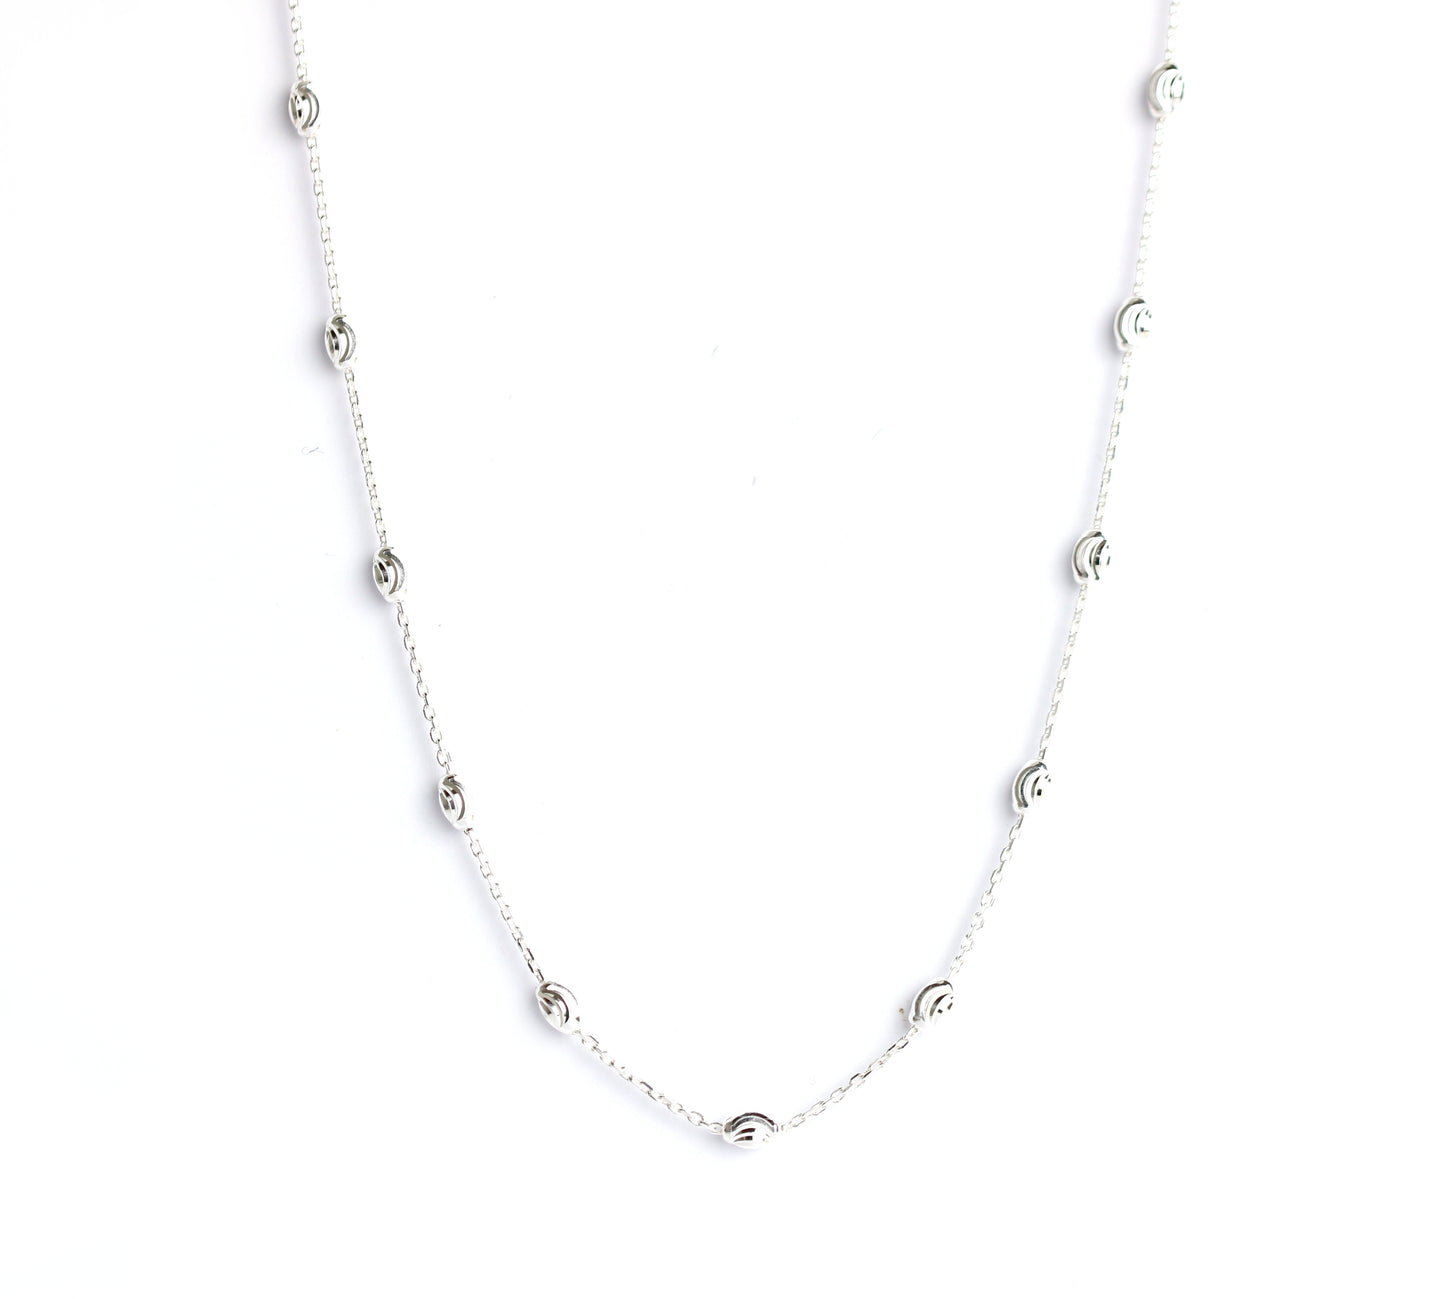 WILHELM MÜLLER - Halskette in Silber mit Ovalen Elementen